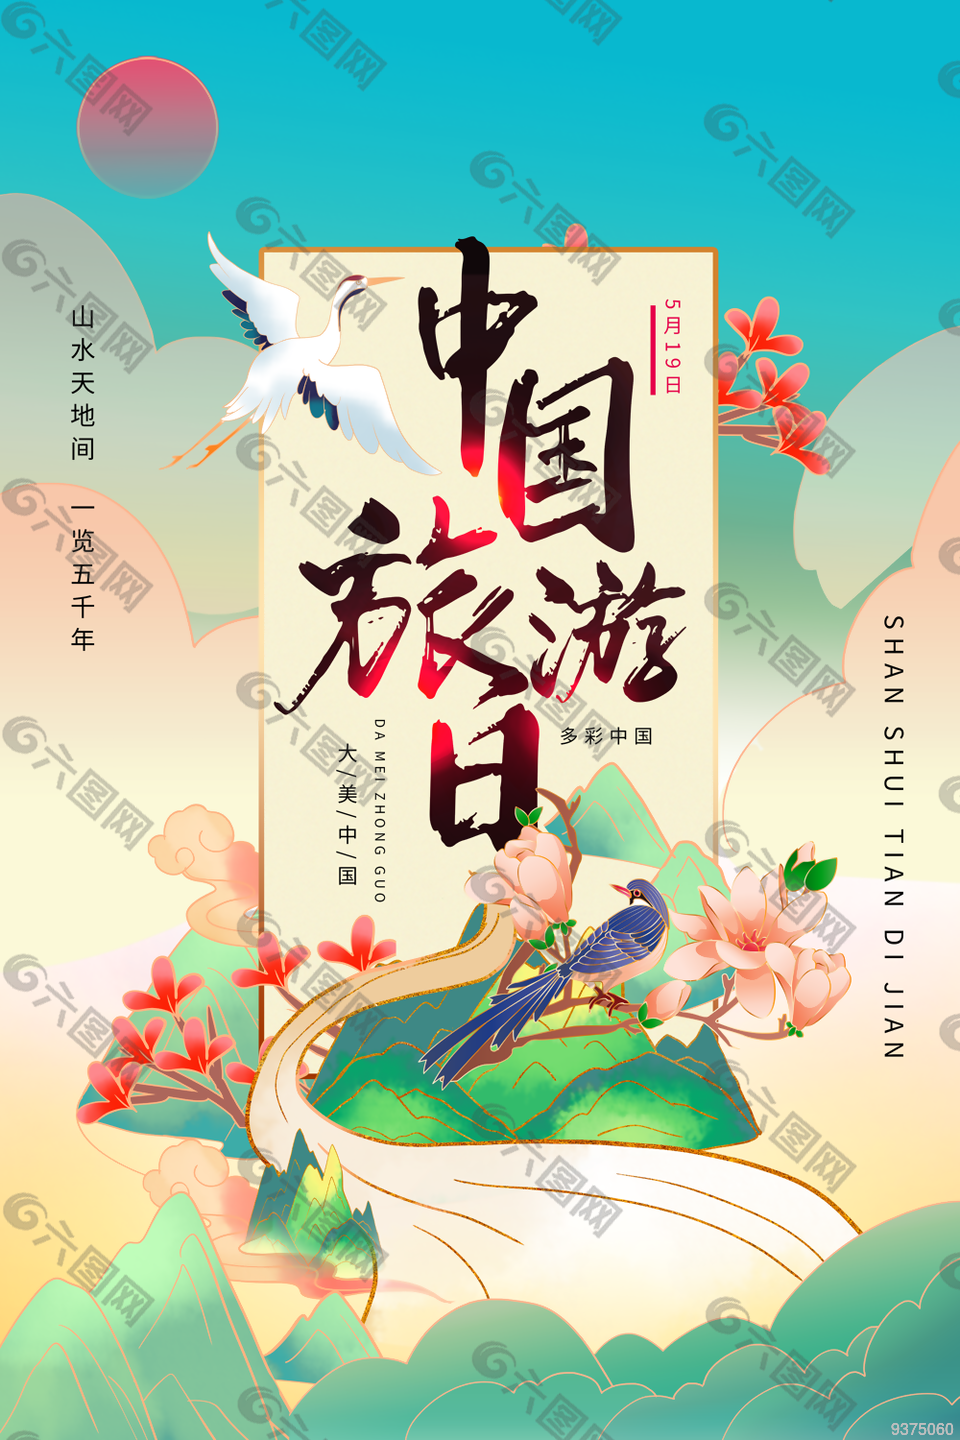 中国旅游日促销海报设计